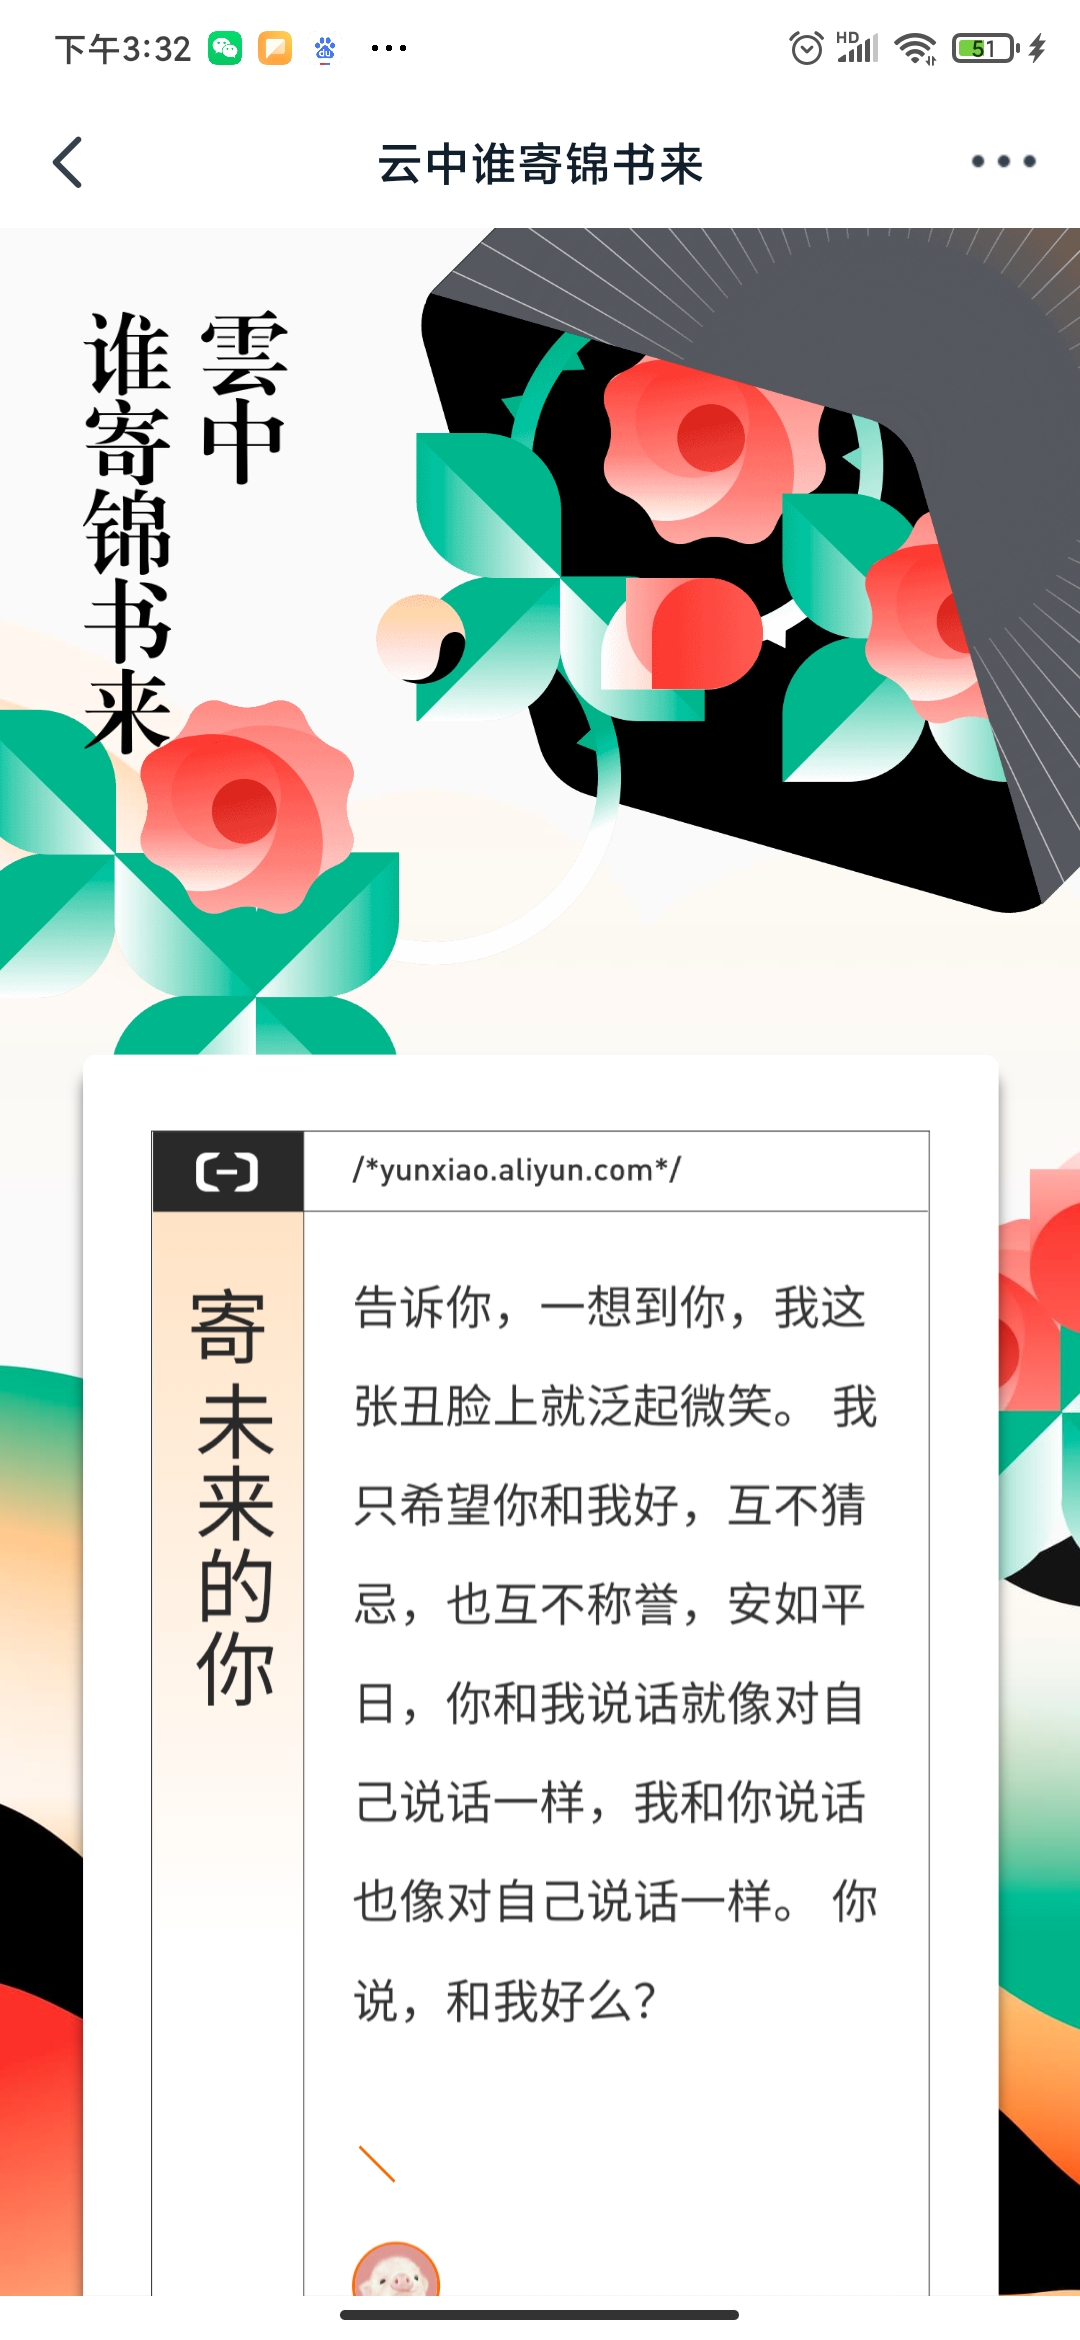 Screenshot_2020-08-20-15-32-16-521_com.alibaba.android.rimet.jpg